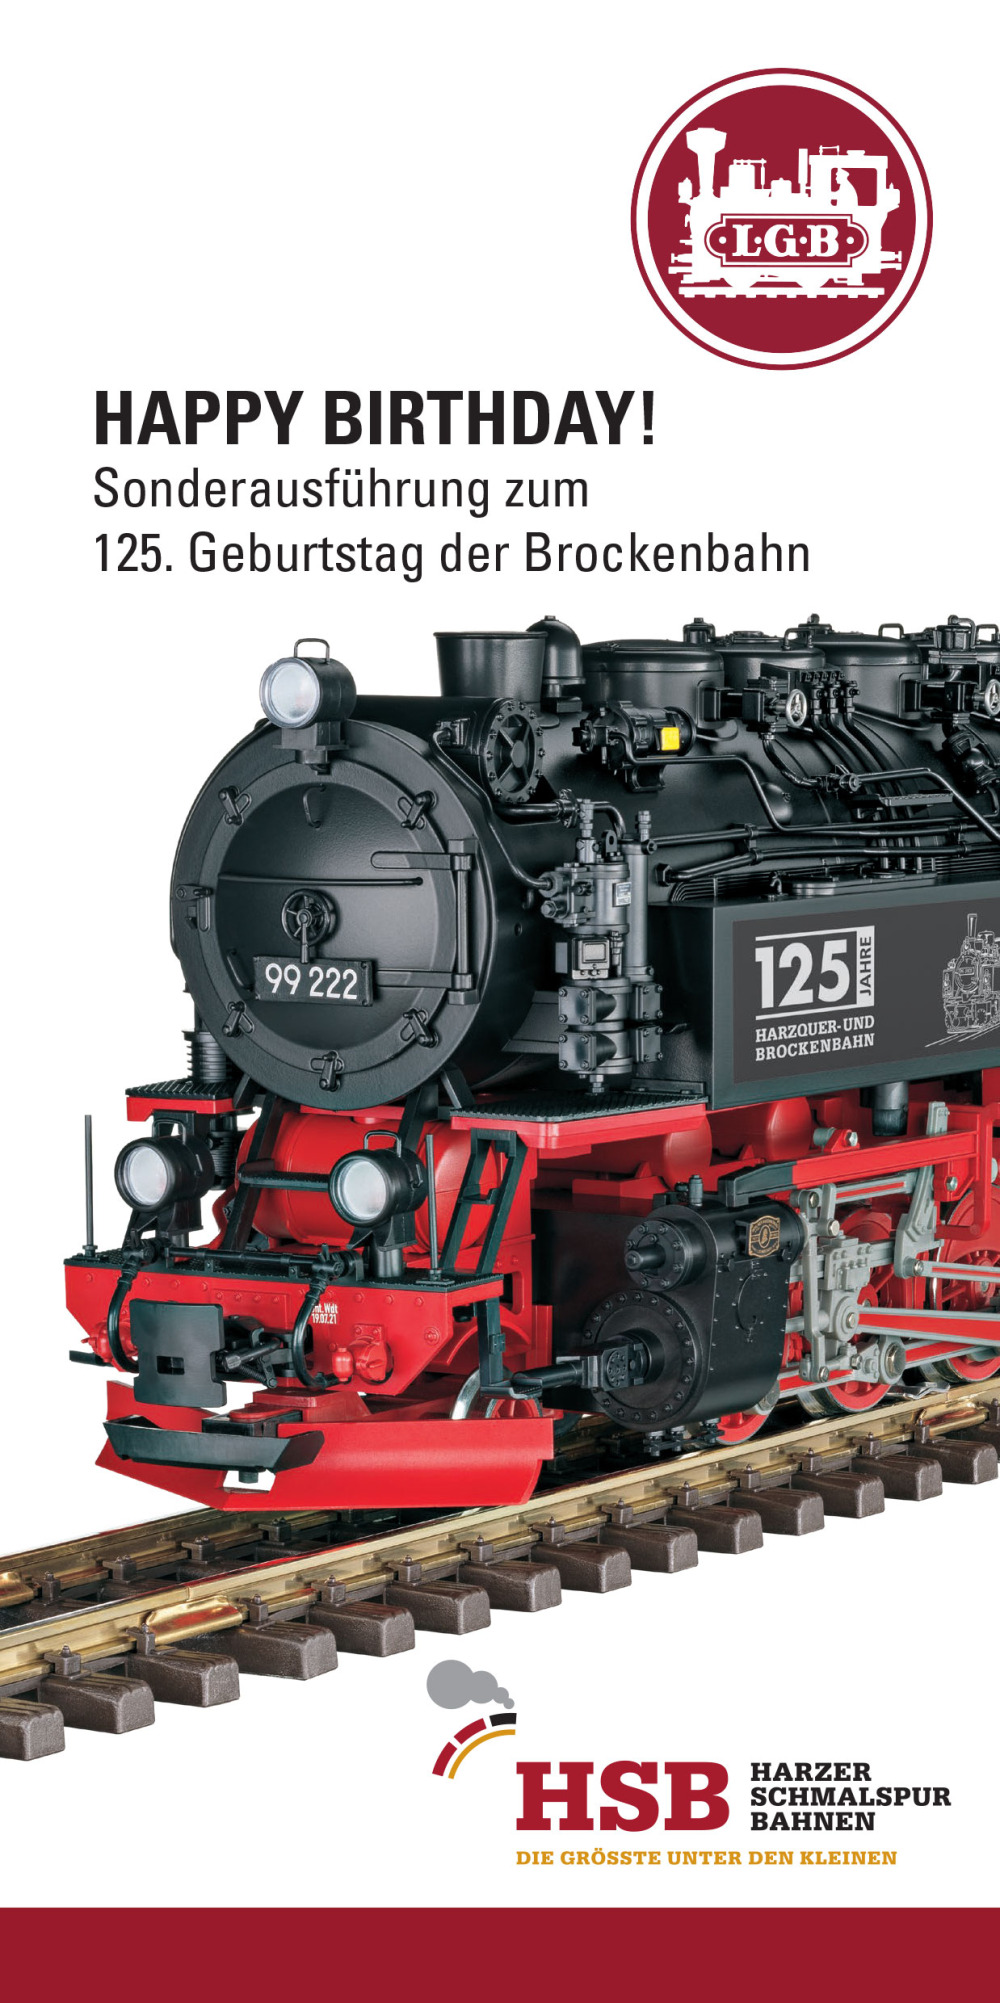 LGB - Sonderausführung zum 125. Geburtstag der Brockenbahn: Dampflokomotive Baureihe 99.22